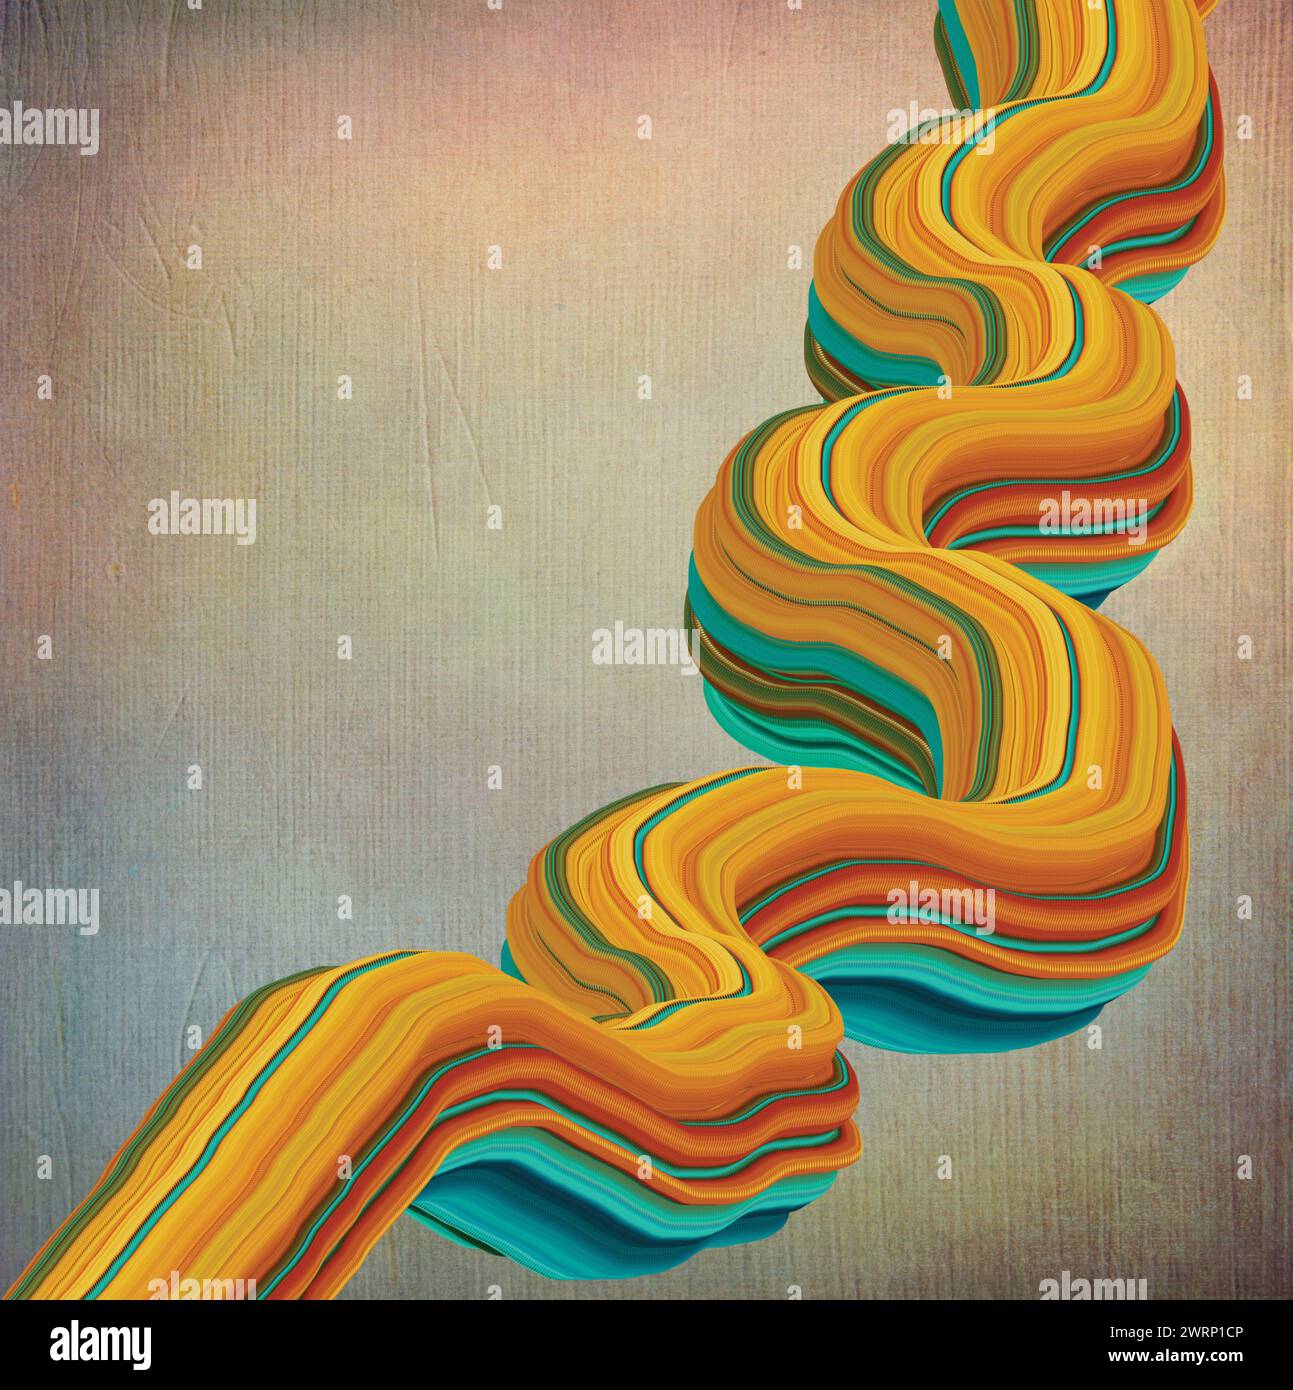 Bunte Spiralmuster und Wellen auf beigem Hintergrund - Illustration Stockfoto